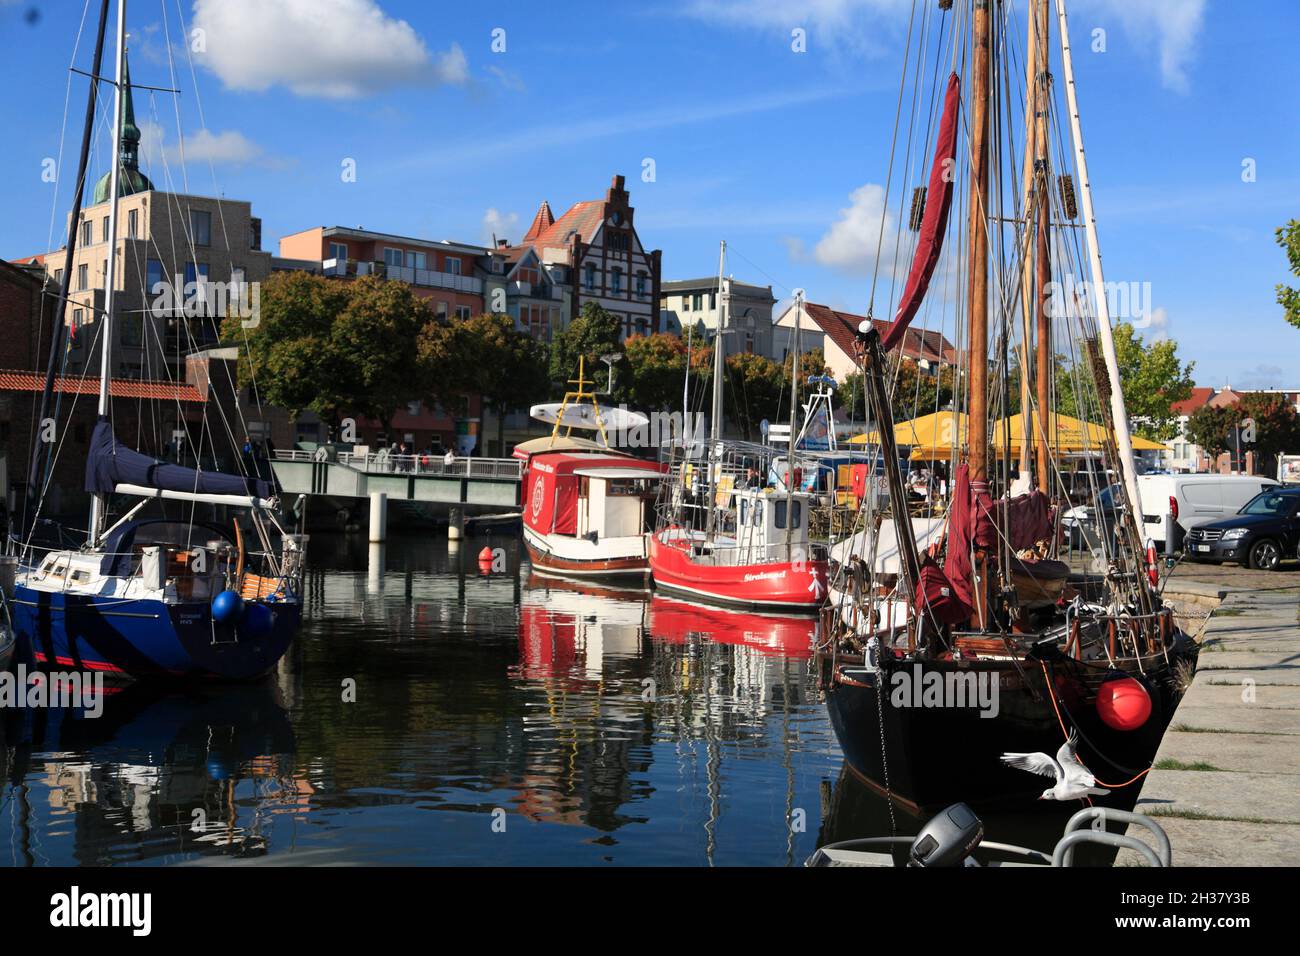 Barche a vela nel porto, città anseatica Stralsund, Meclemburgo Pomerania occidentale, Germania, Europa Foto Stock